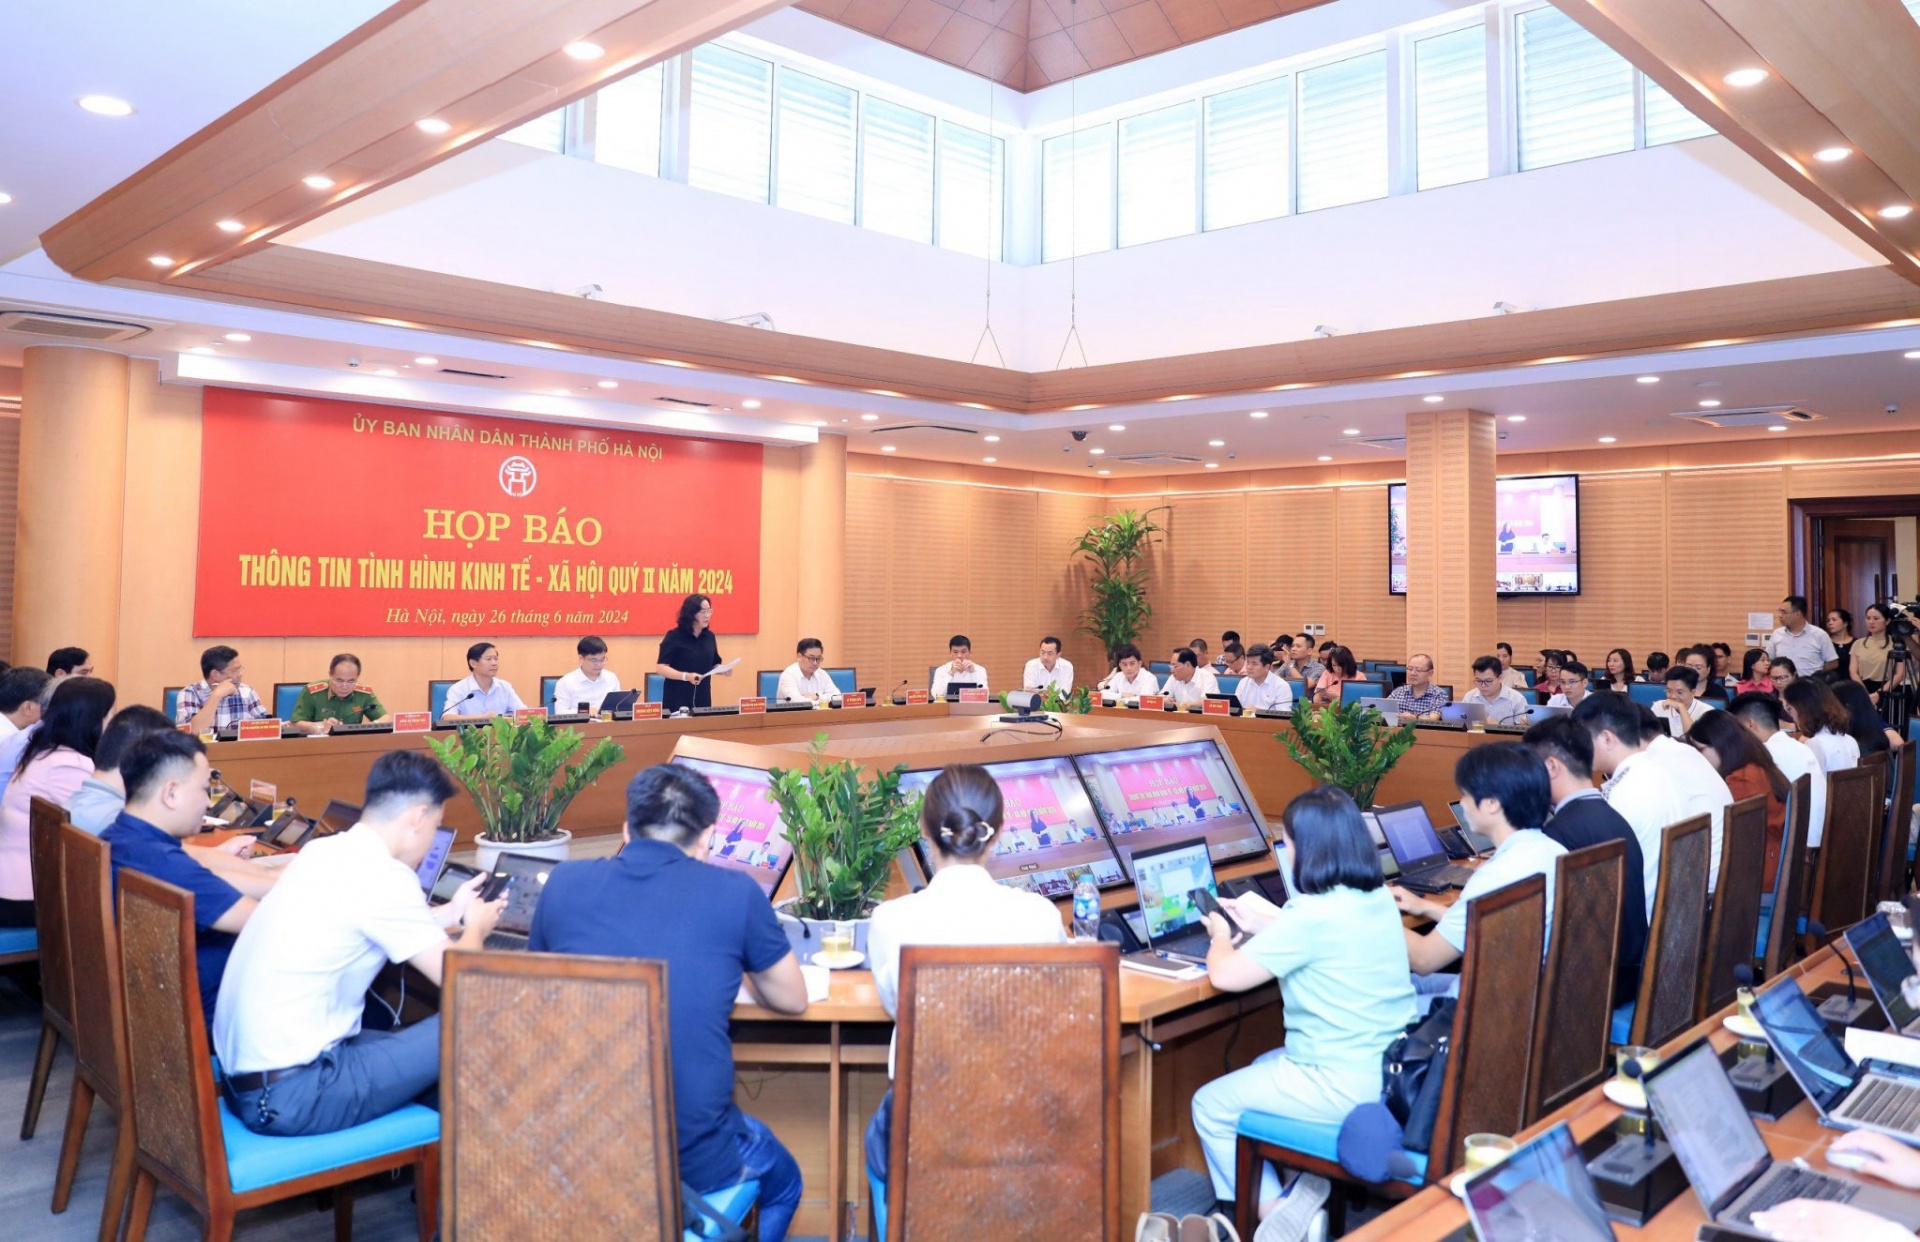 Hanoi attracts nearly $1.2 billion in FDI